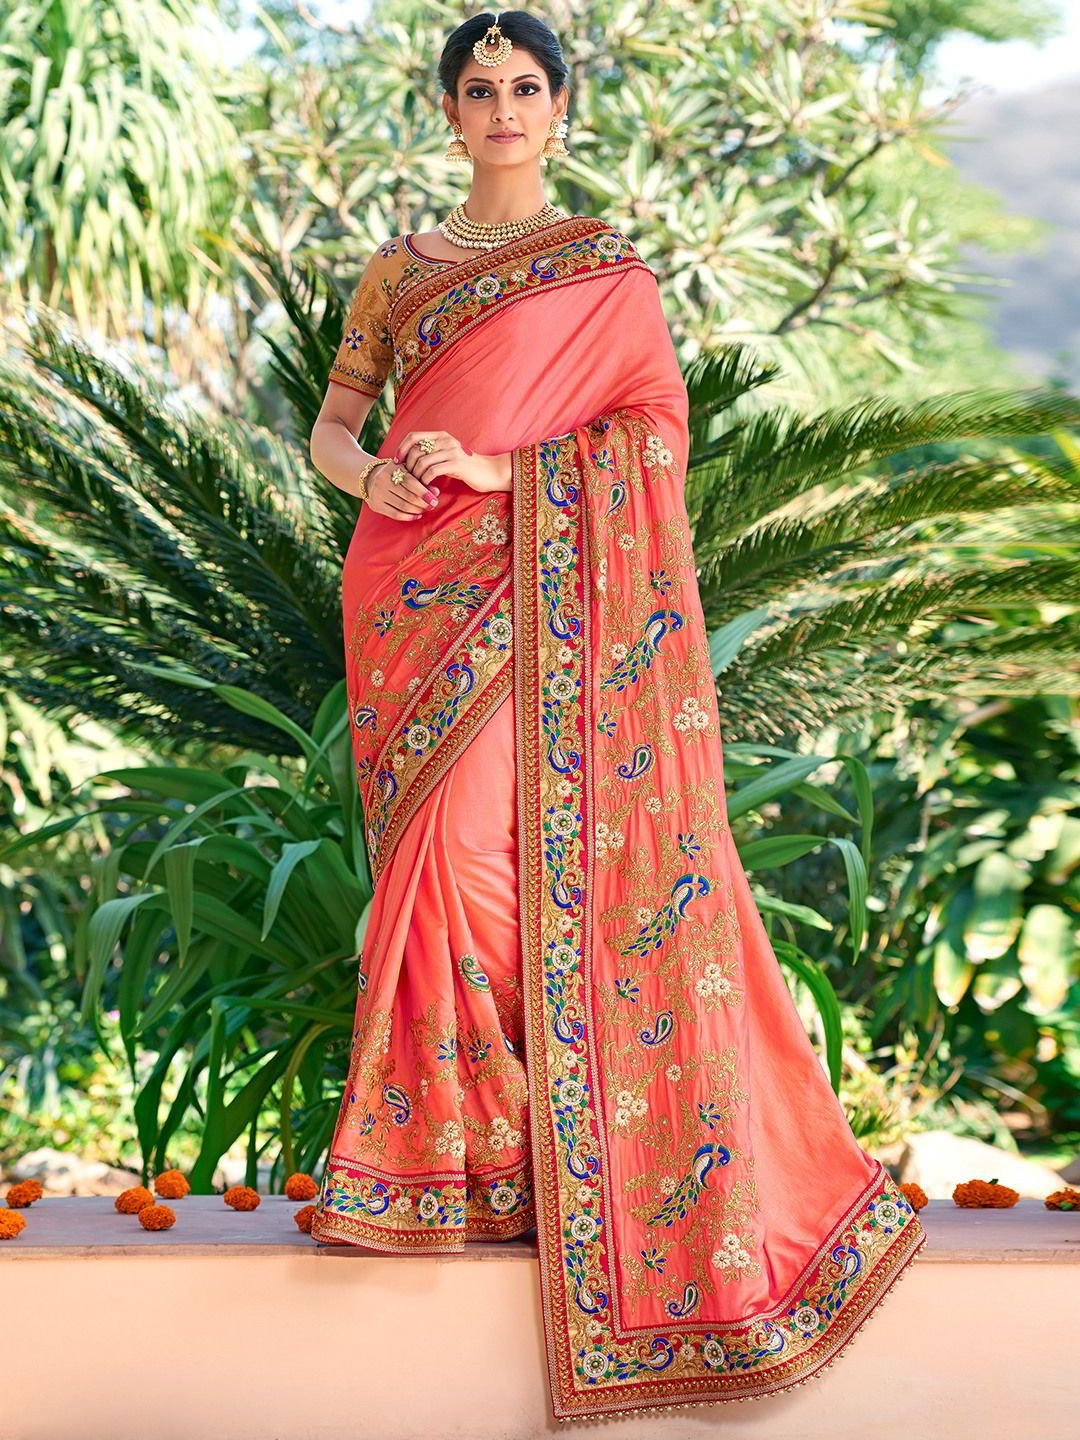 Картинка сари. Национальный костюм Индии Сари. Хиндустанцы в национальных костюмах. Сари (женская одежда в Индии). Индия женщины в Сари.